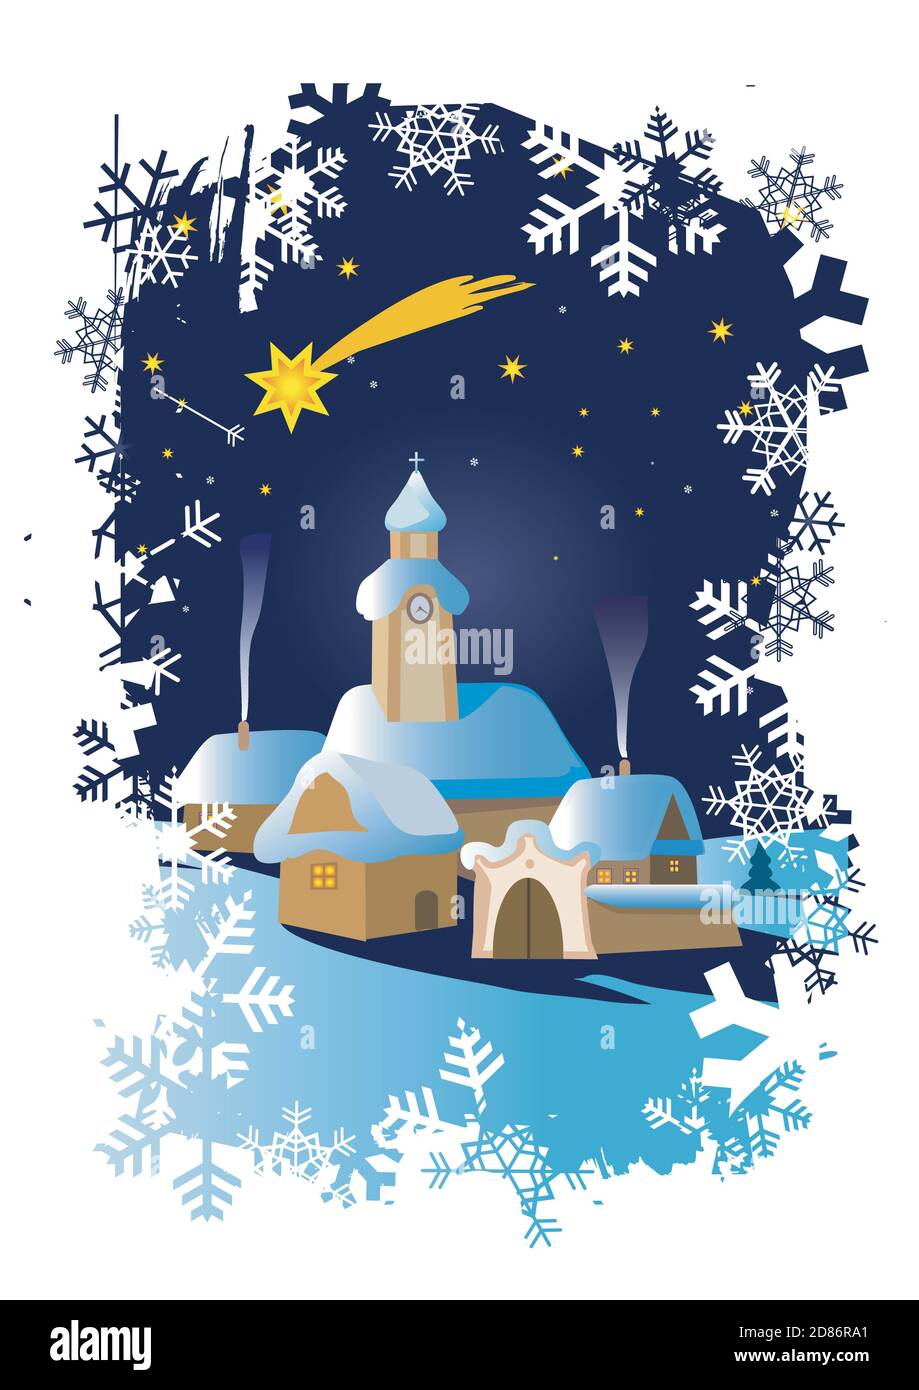 Weihnachten Winterlandschaft auf grunge Schneeflocken Hintergrund. Illustration einer Nachtlandschaft mit einer Kirche und dem Stern von Bethlehem. Stock Vektor